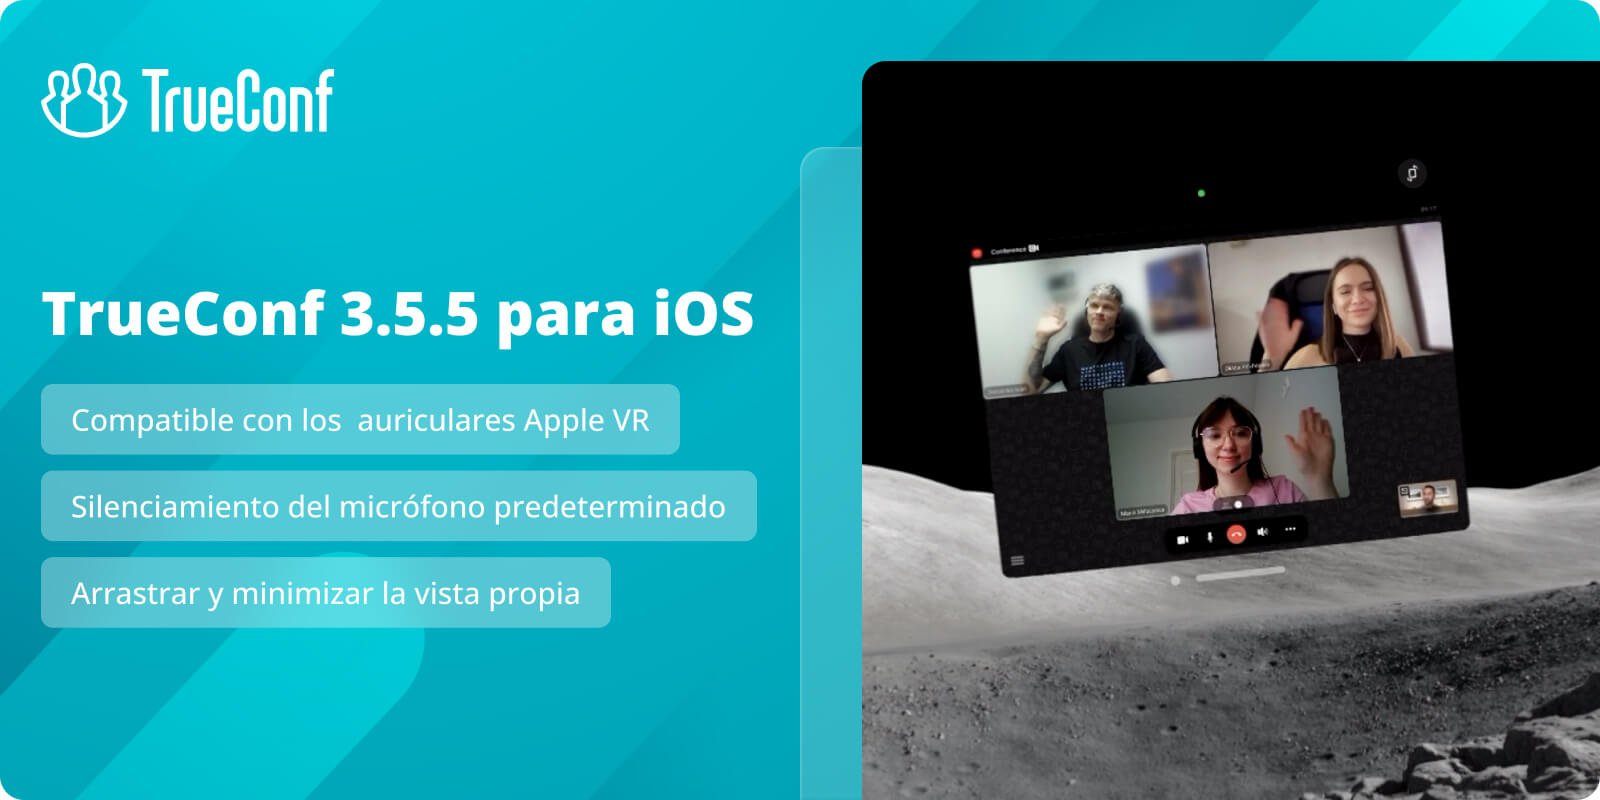 TrueConf 3.5.5 para iOS: compatible con Apple Vision Pro y silenciamiento del micrófono predeterminado 1